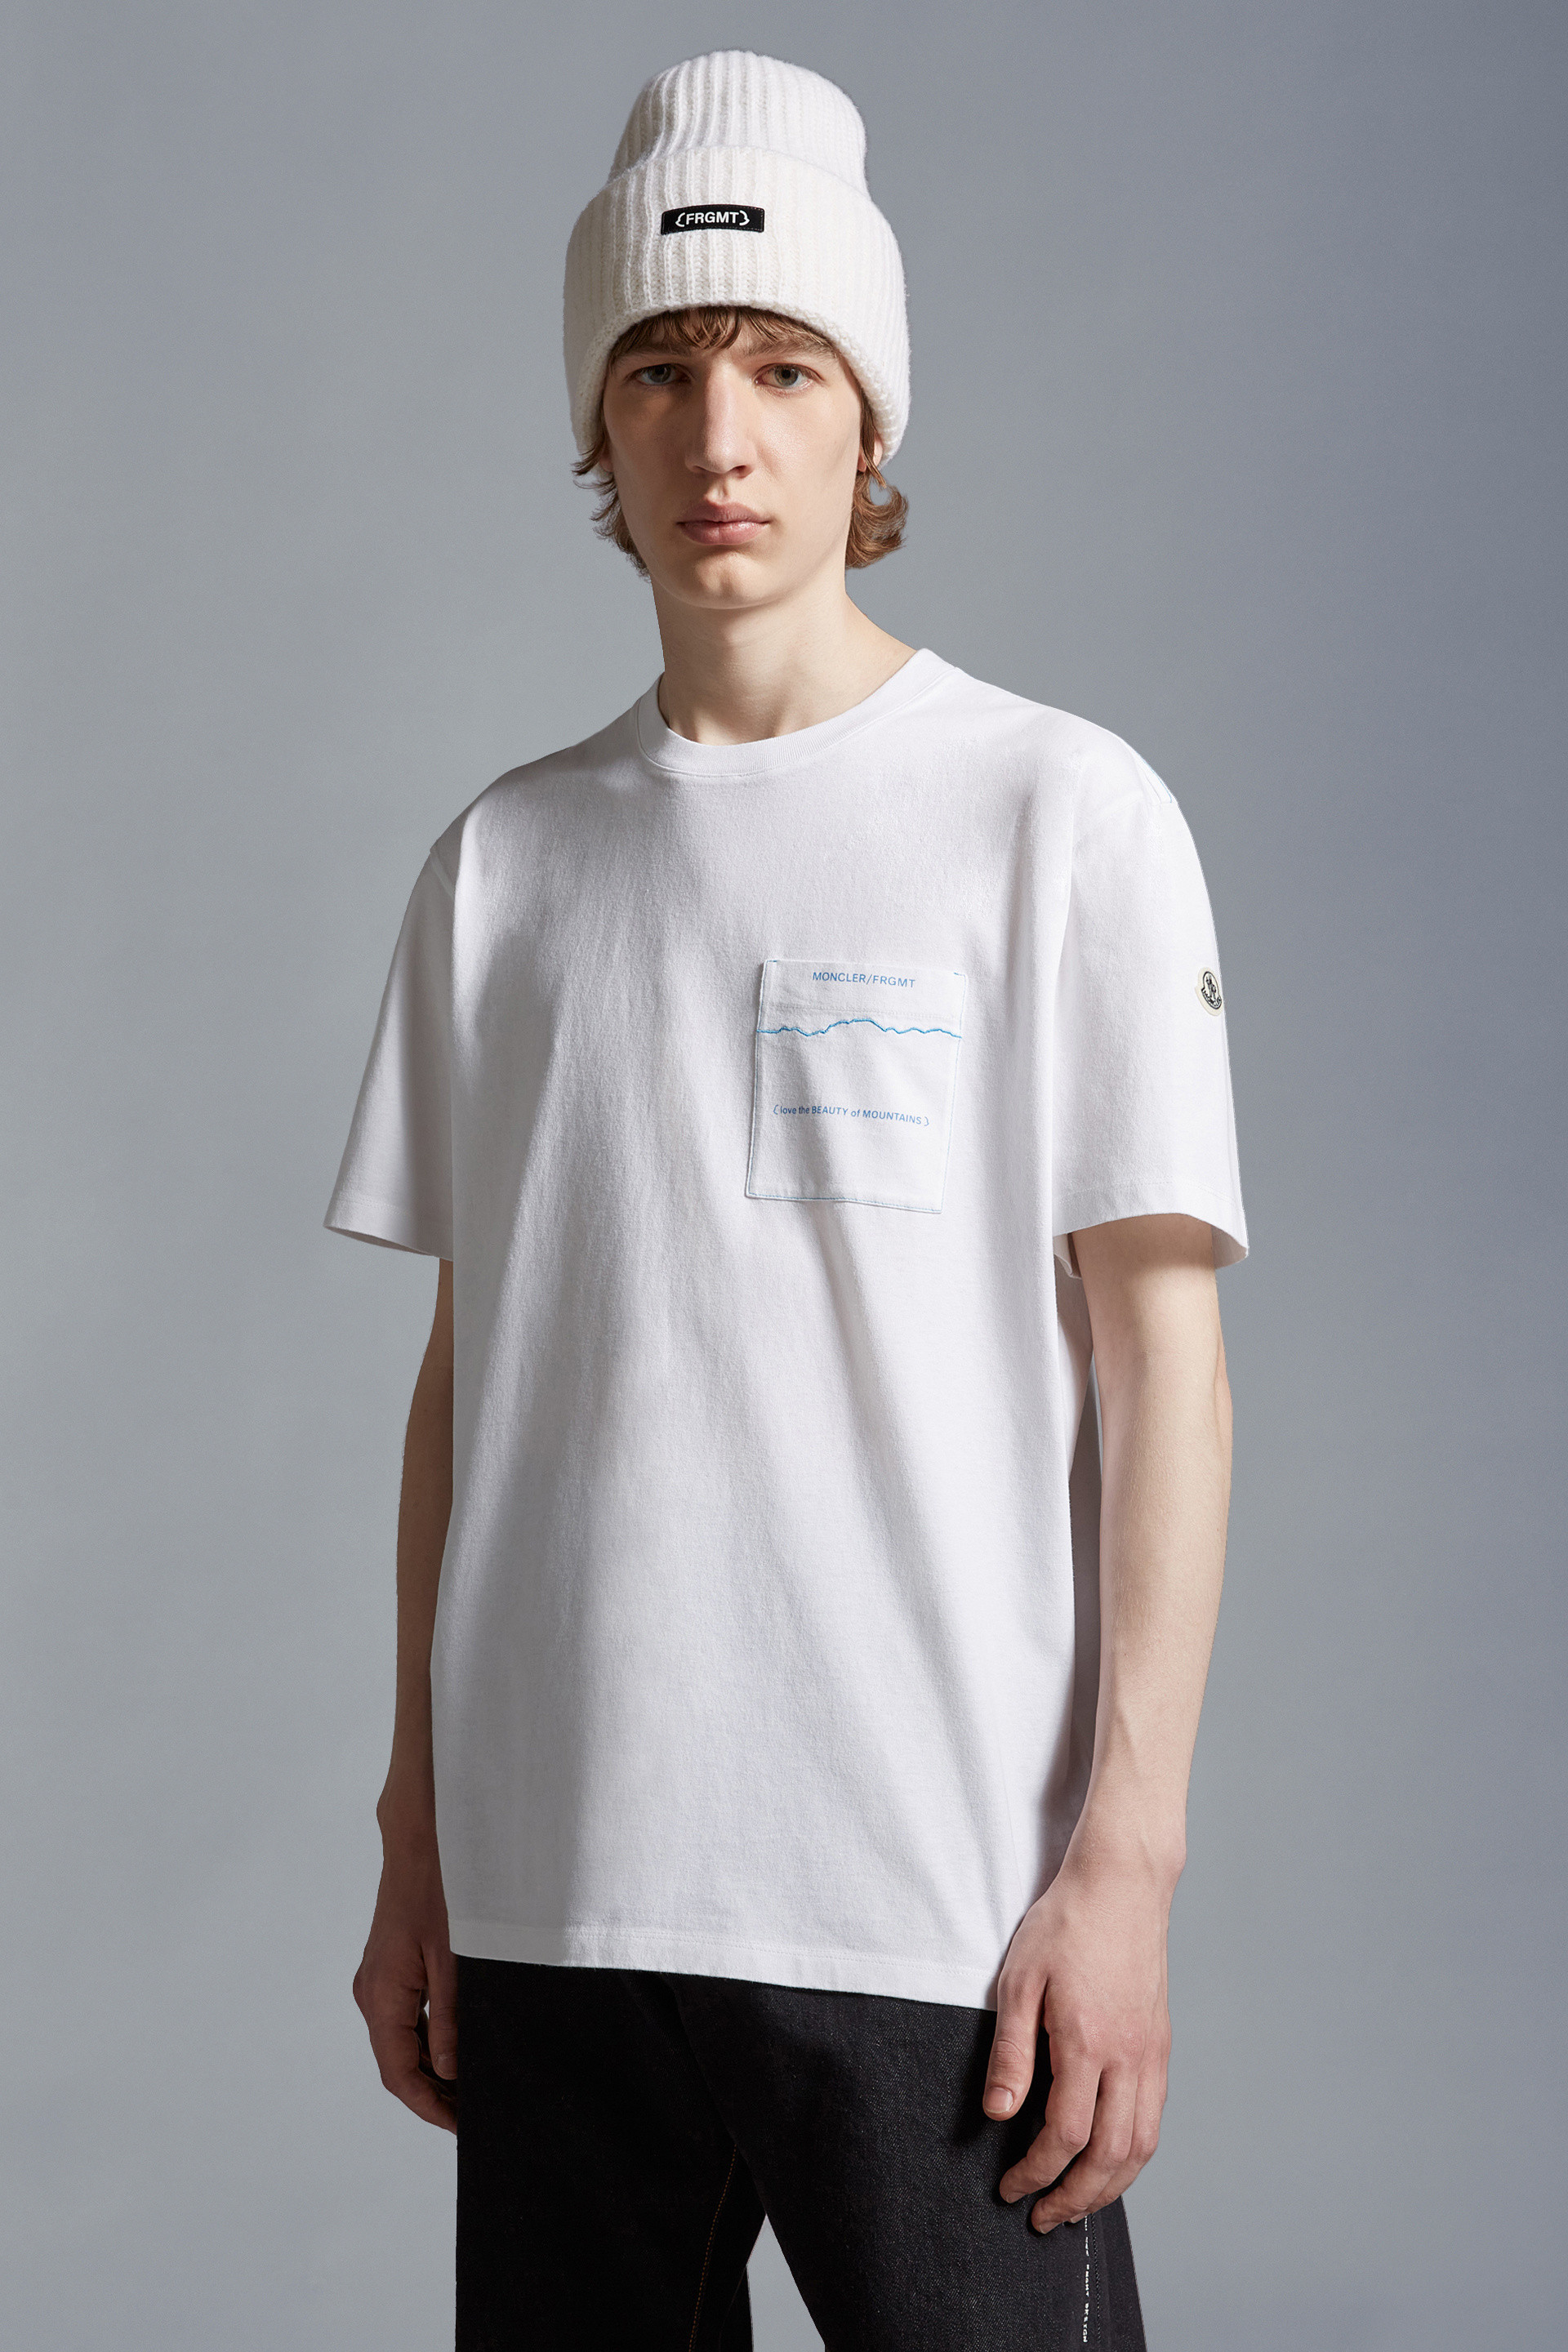 オプティカルホワイト Tシャツ : Moncler x Frgmnt 向けの Genius